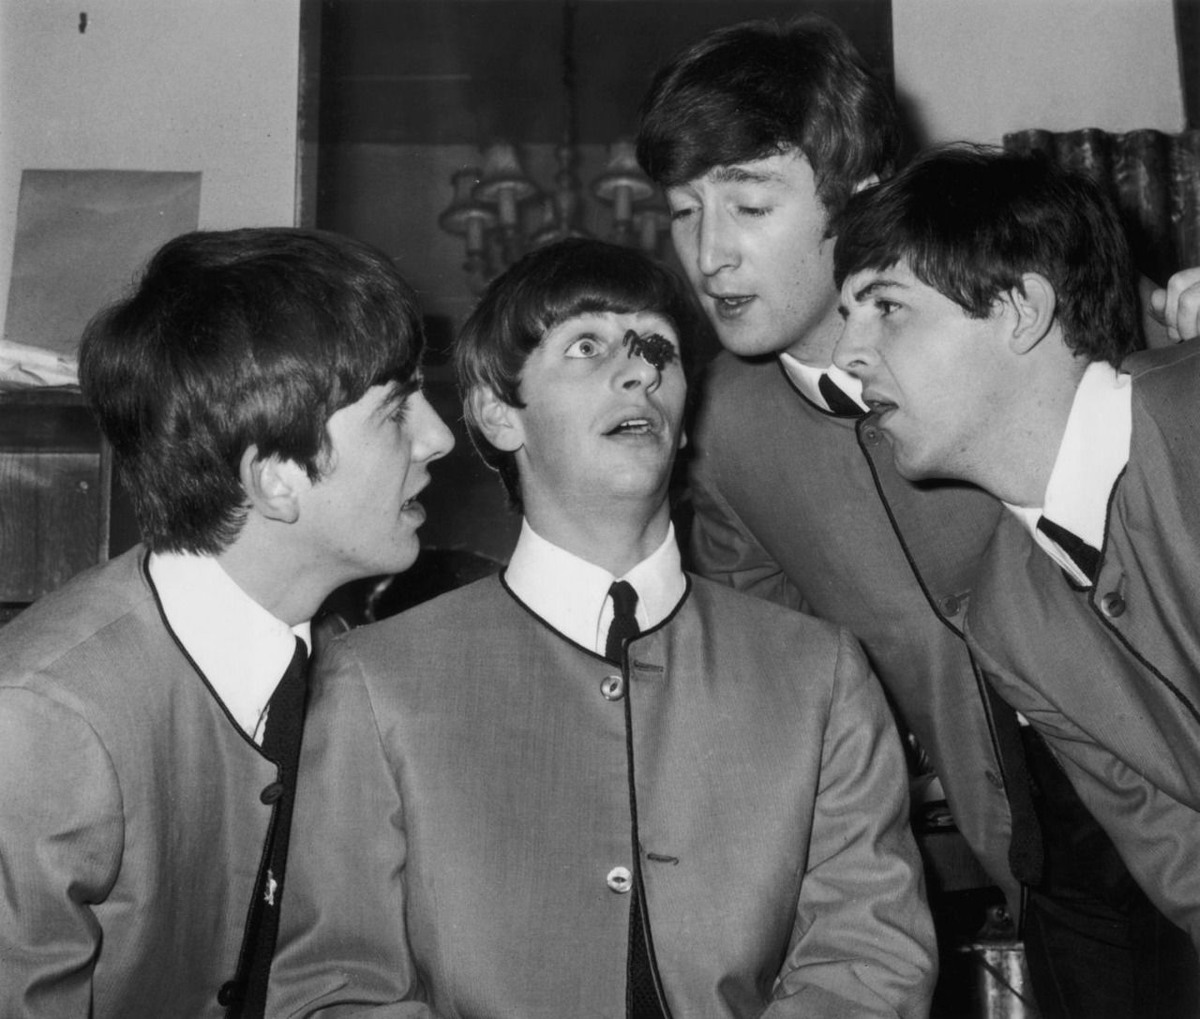 أعضاء فرقة الـ(بيتلز)، وهم (جورج هاريسون) و(جون لينون) و(بول مكارتني) يحدقون إلى عنكبوت بلاستيكي وضع فوق أنف طبال الفرقة (رينغو ستار)، وذلك بعد حفل أحيوه في مهرجان مسرح الـ(بالاديوم) في لندن سنة 1963